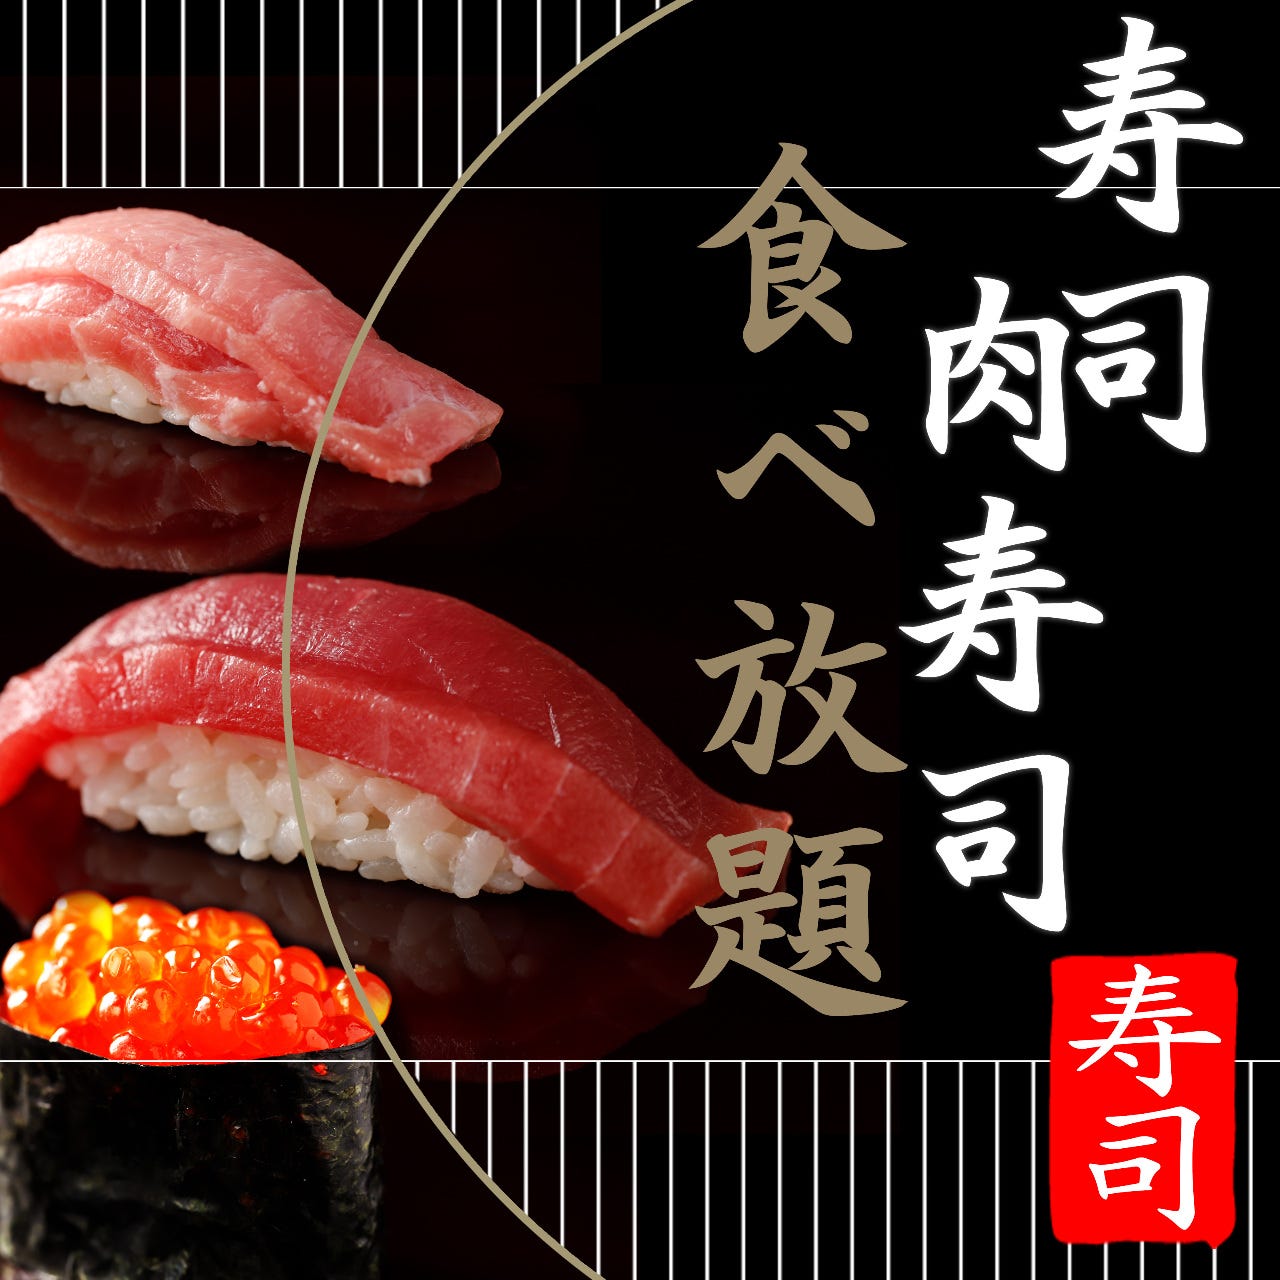 22年 最新グルメ 北海道 寿司食べ放題のお店 レストラン カフェ 居酒屋のネット予約 北海道版